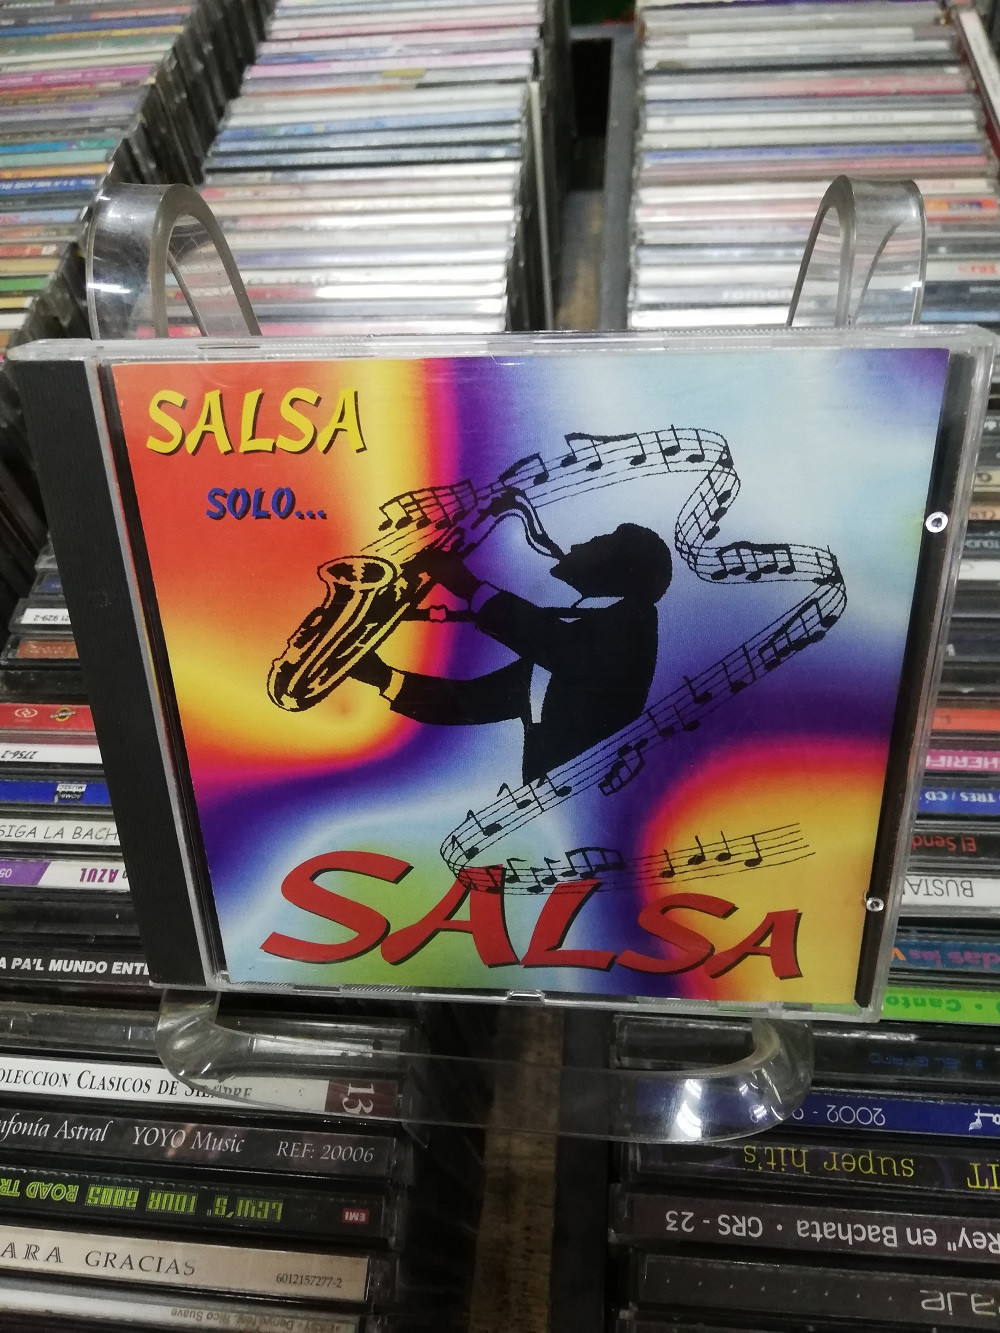 Imagen CD SALSA SOLO...SALSA